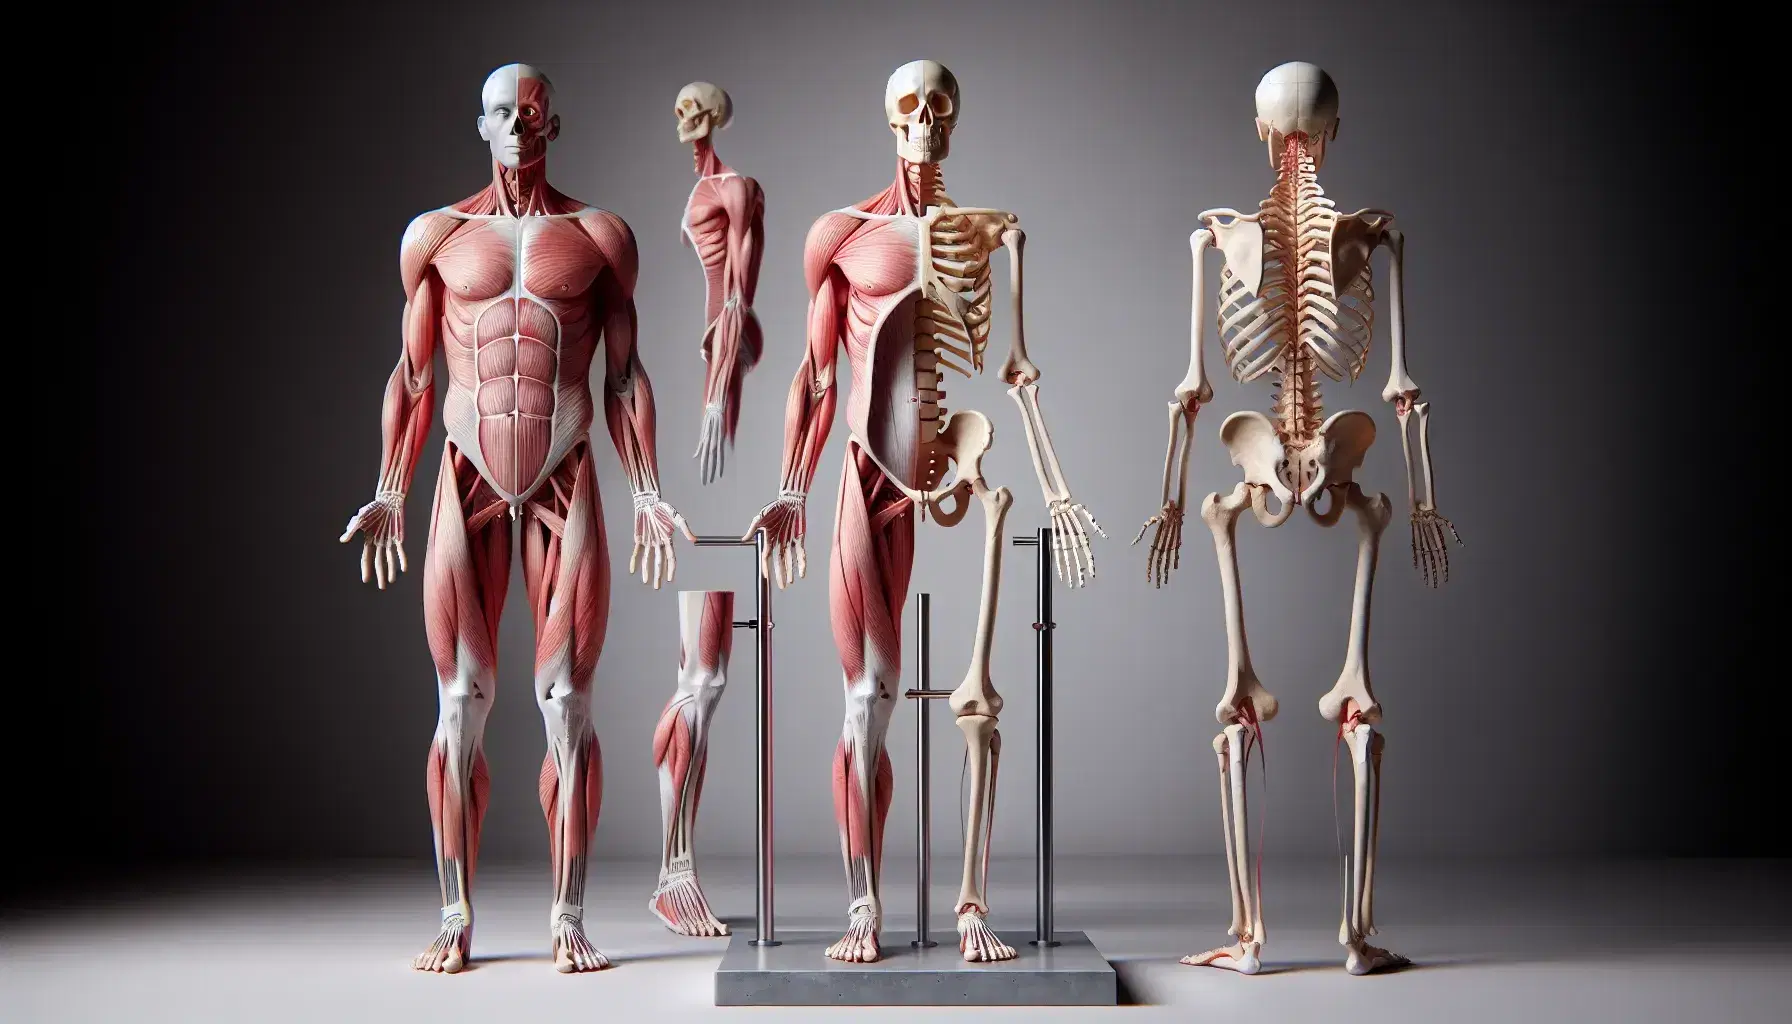 Esqueleto humano completo en posición de pie junto a figura muscular sin ropa, mostrando detalladamente la anatomía ósea y muscular en fondo neutro.